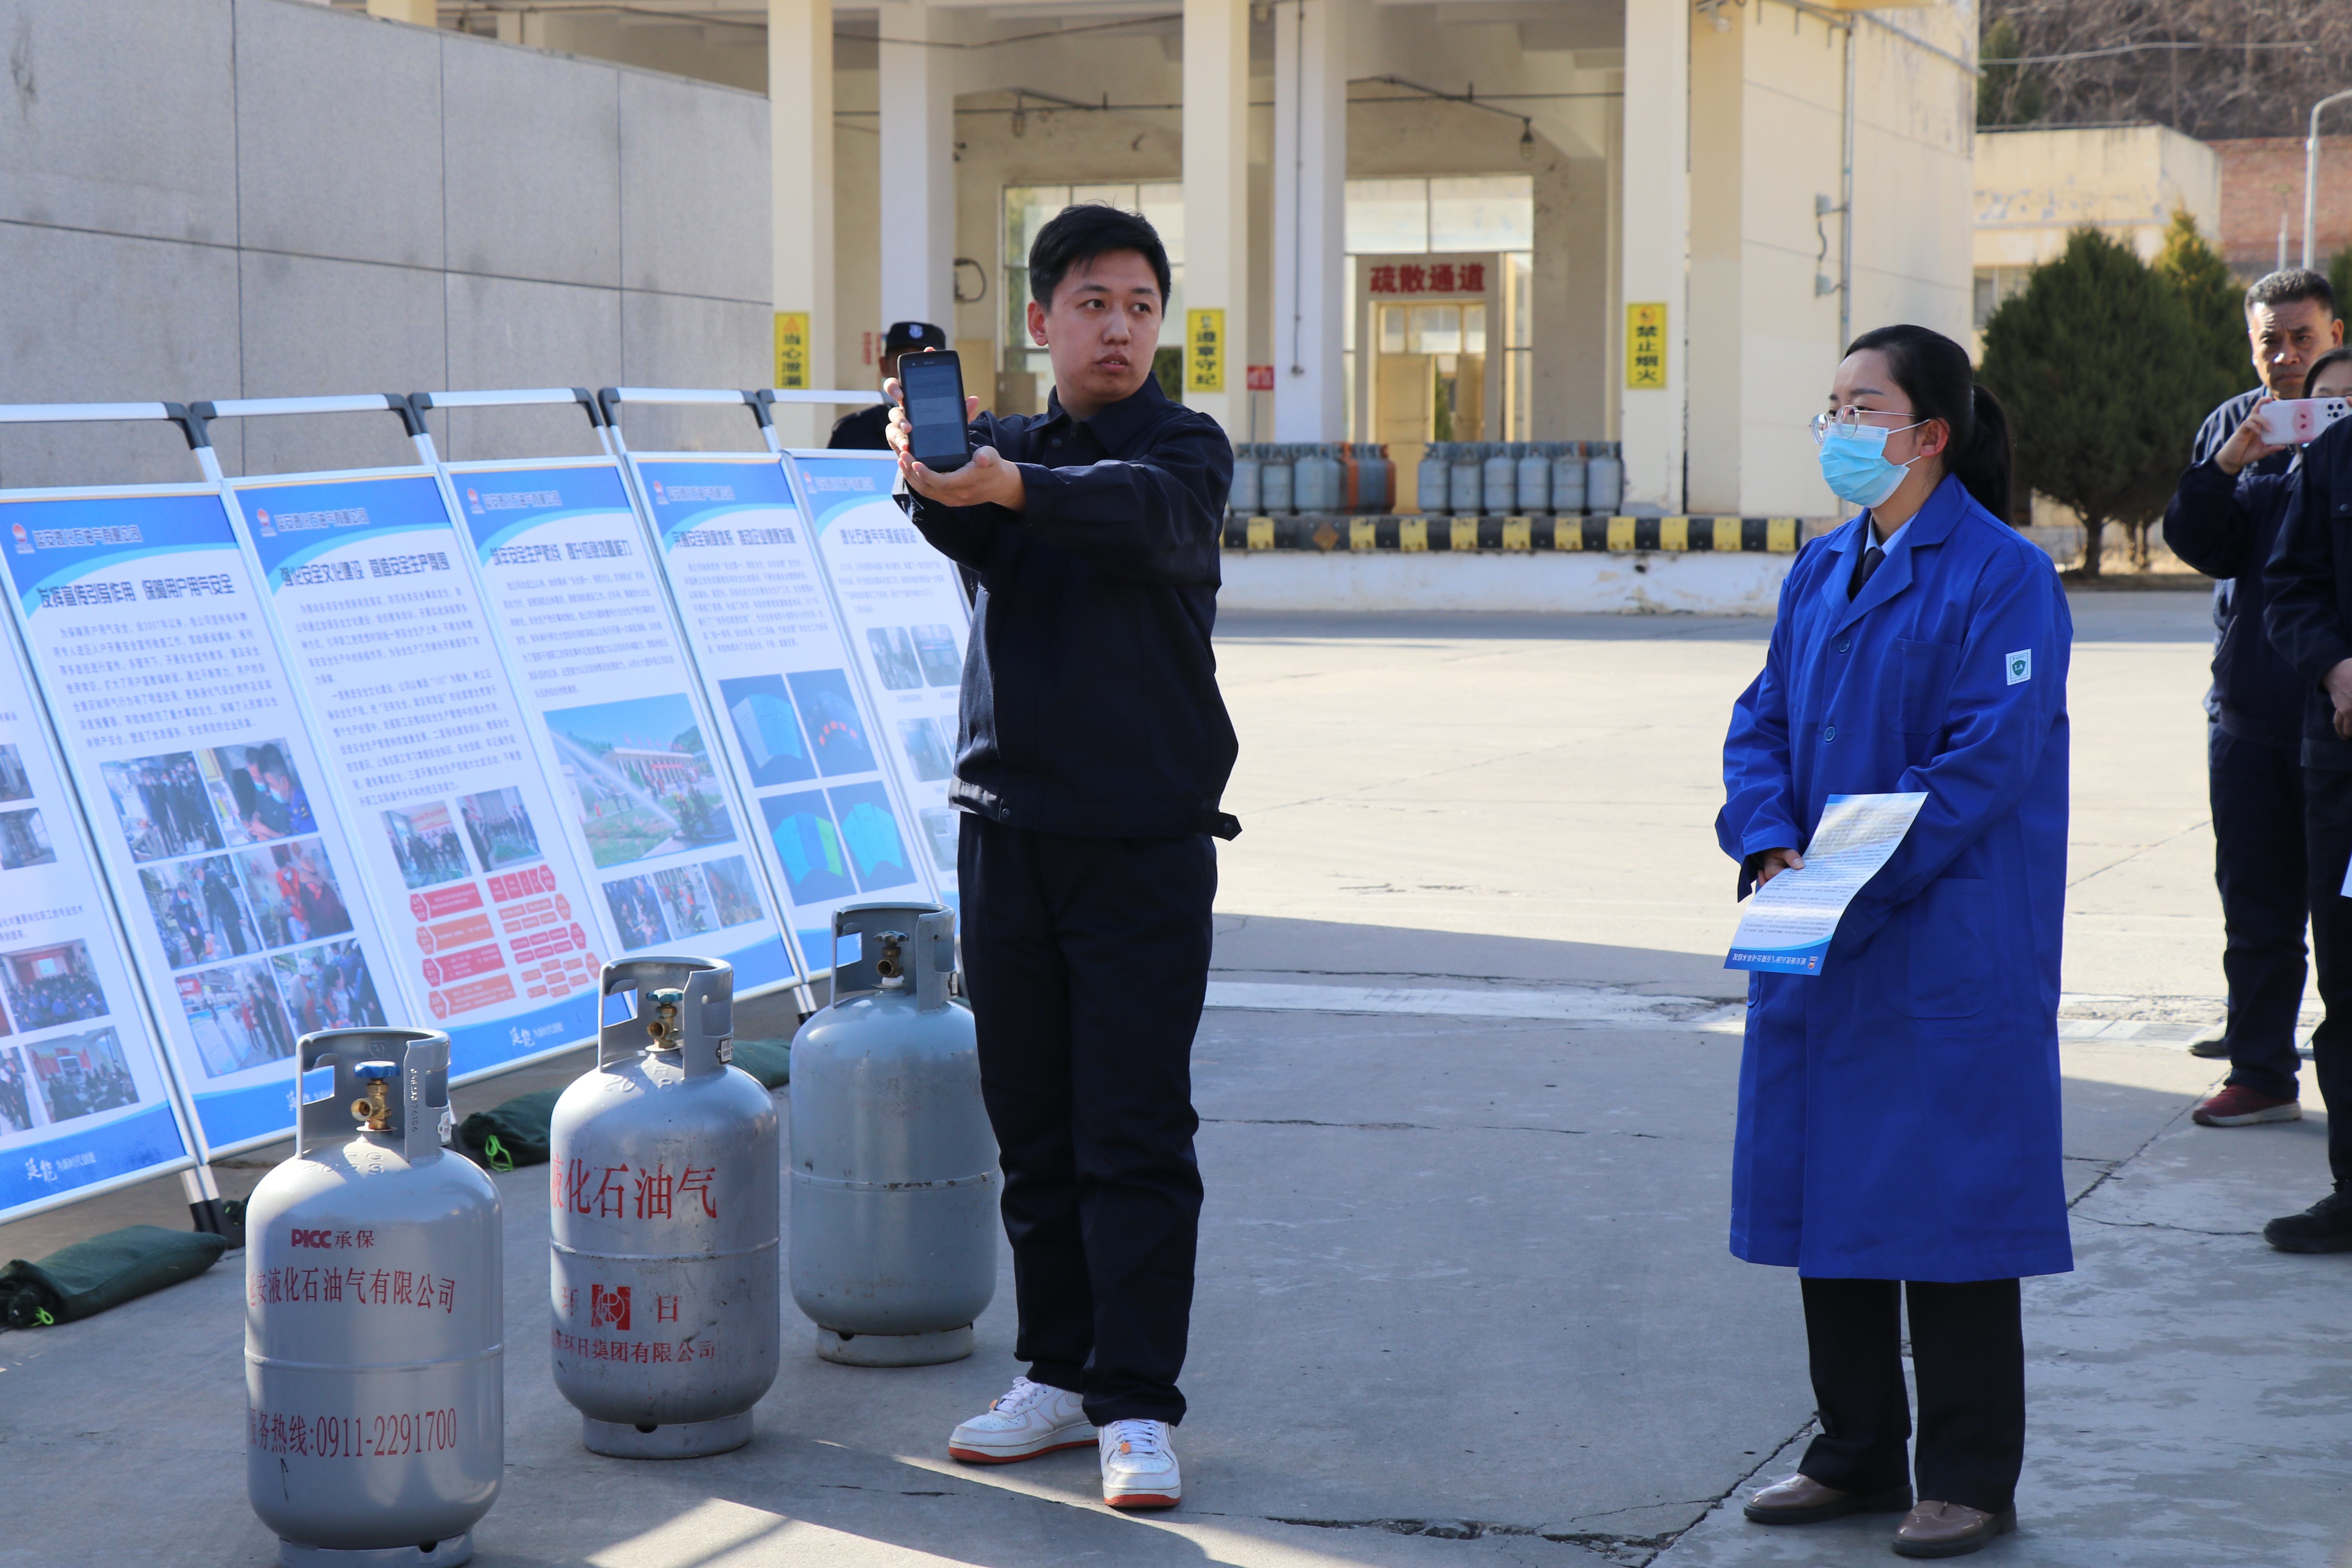 2-液化气公司操作人员向观摩人员展示如何读取气瓶信息.JPG